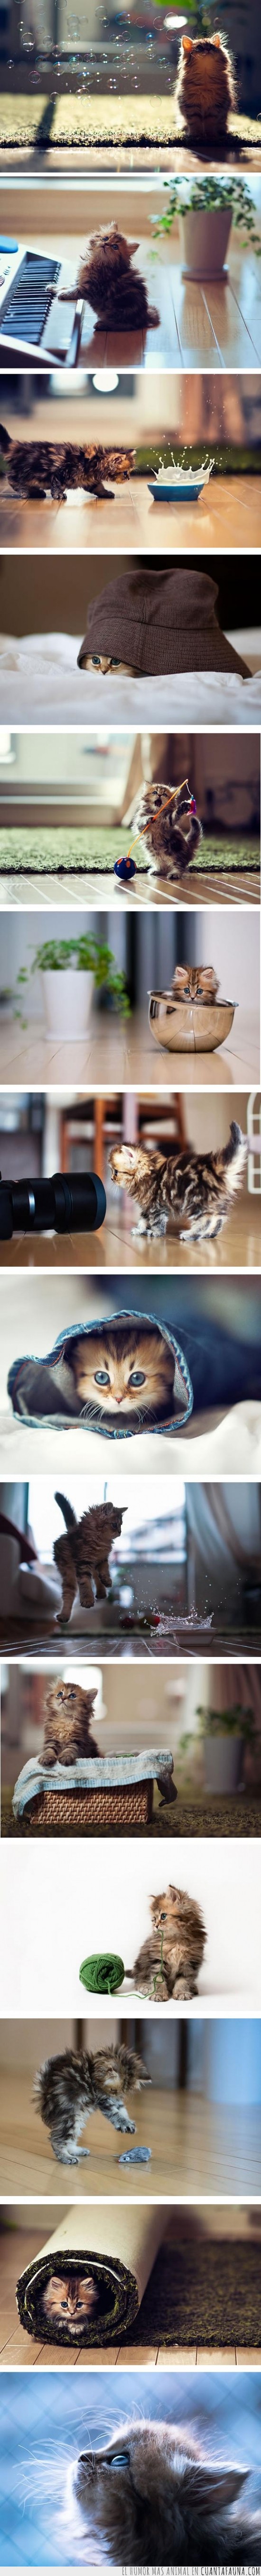 gato,fotos,sesión,preciosa,gatito